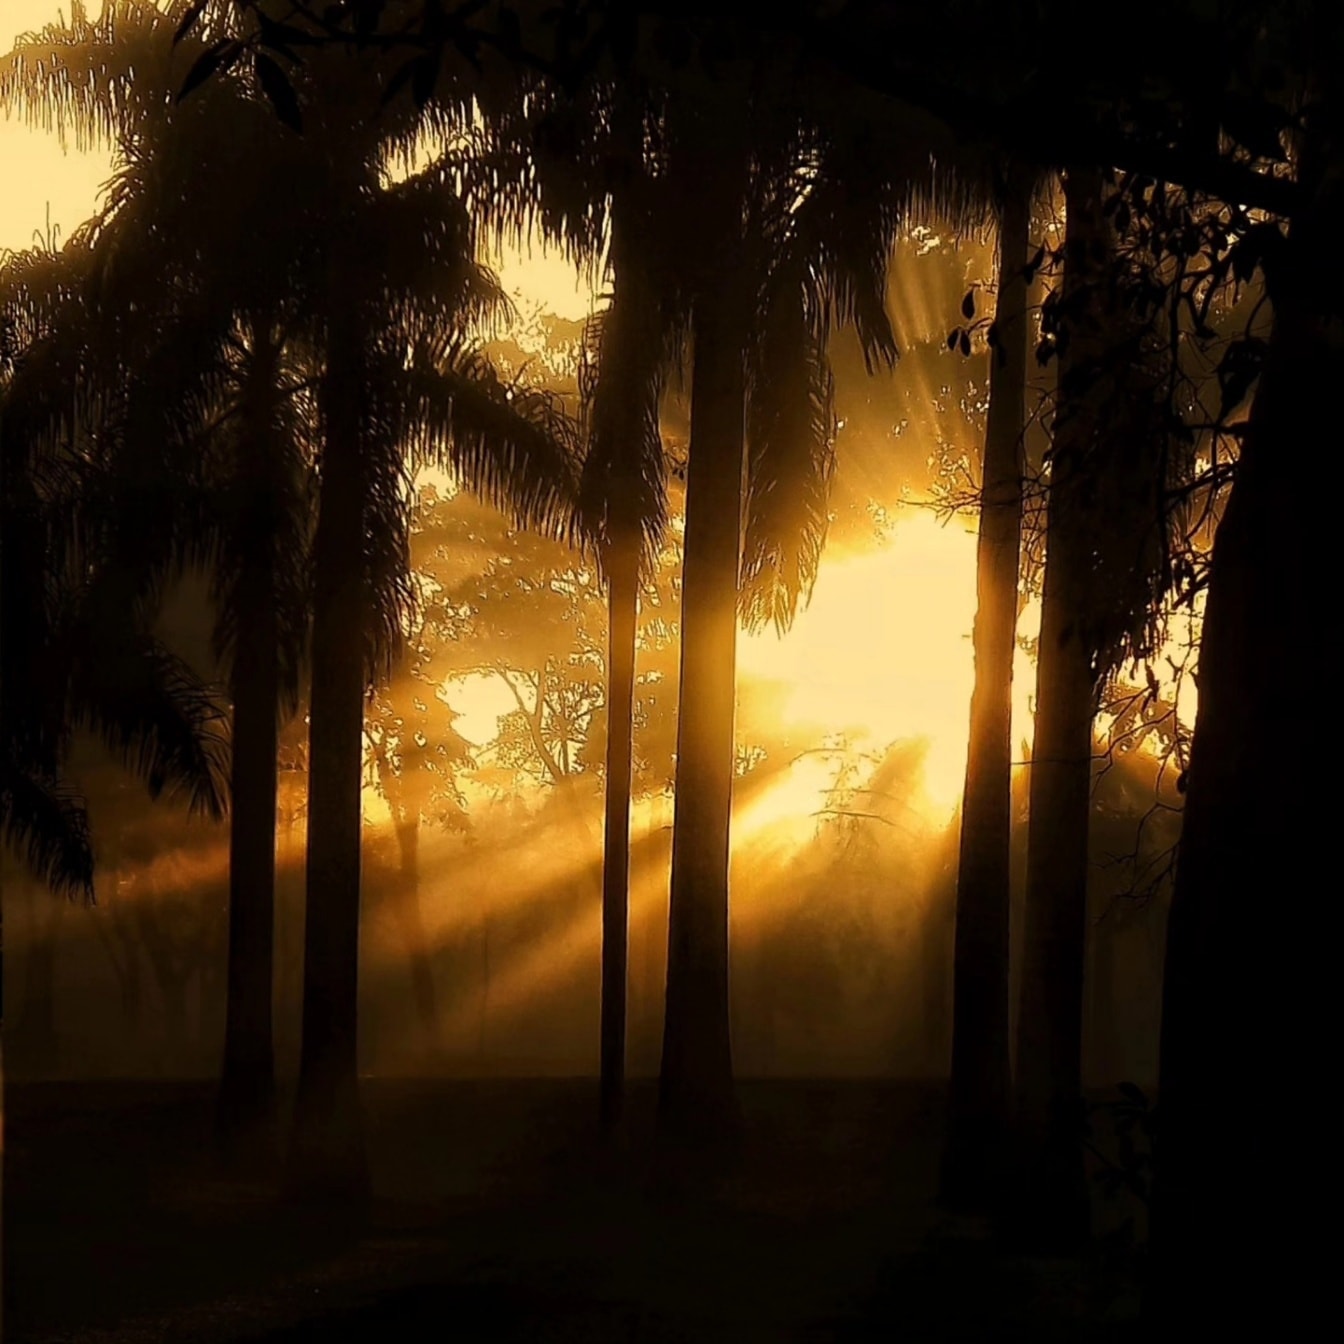 Grafika jasných slunečních paprsků v temném lese se siluetou stromů ve stínu